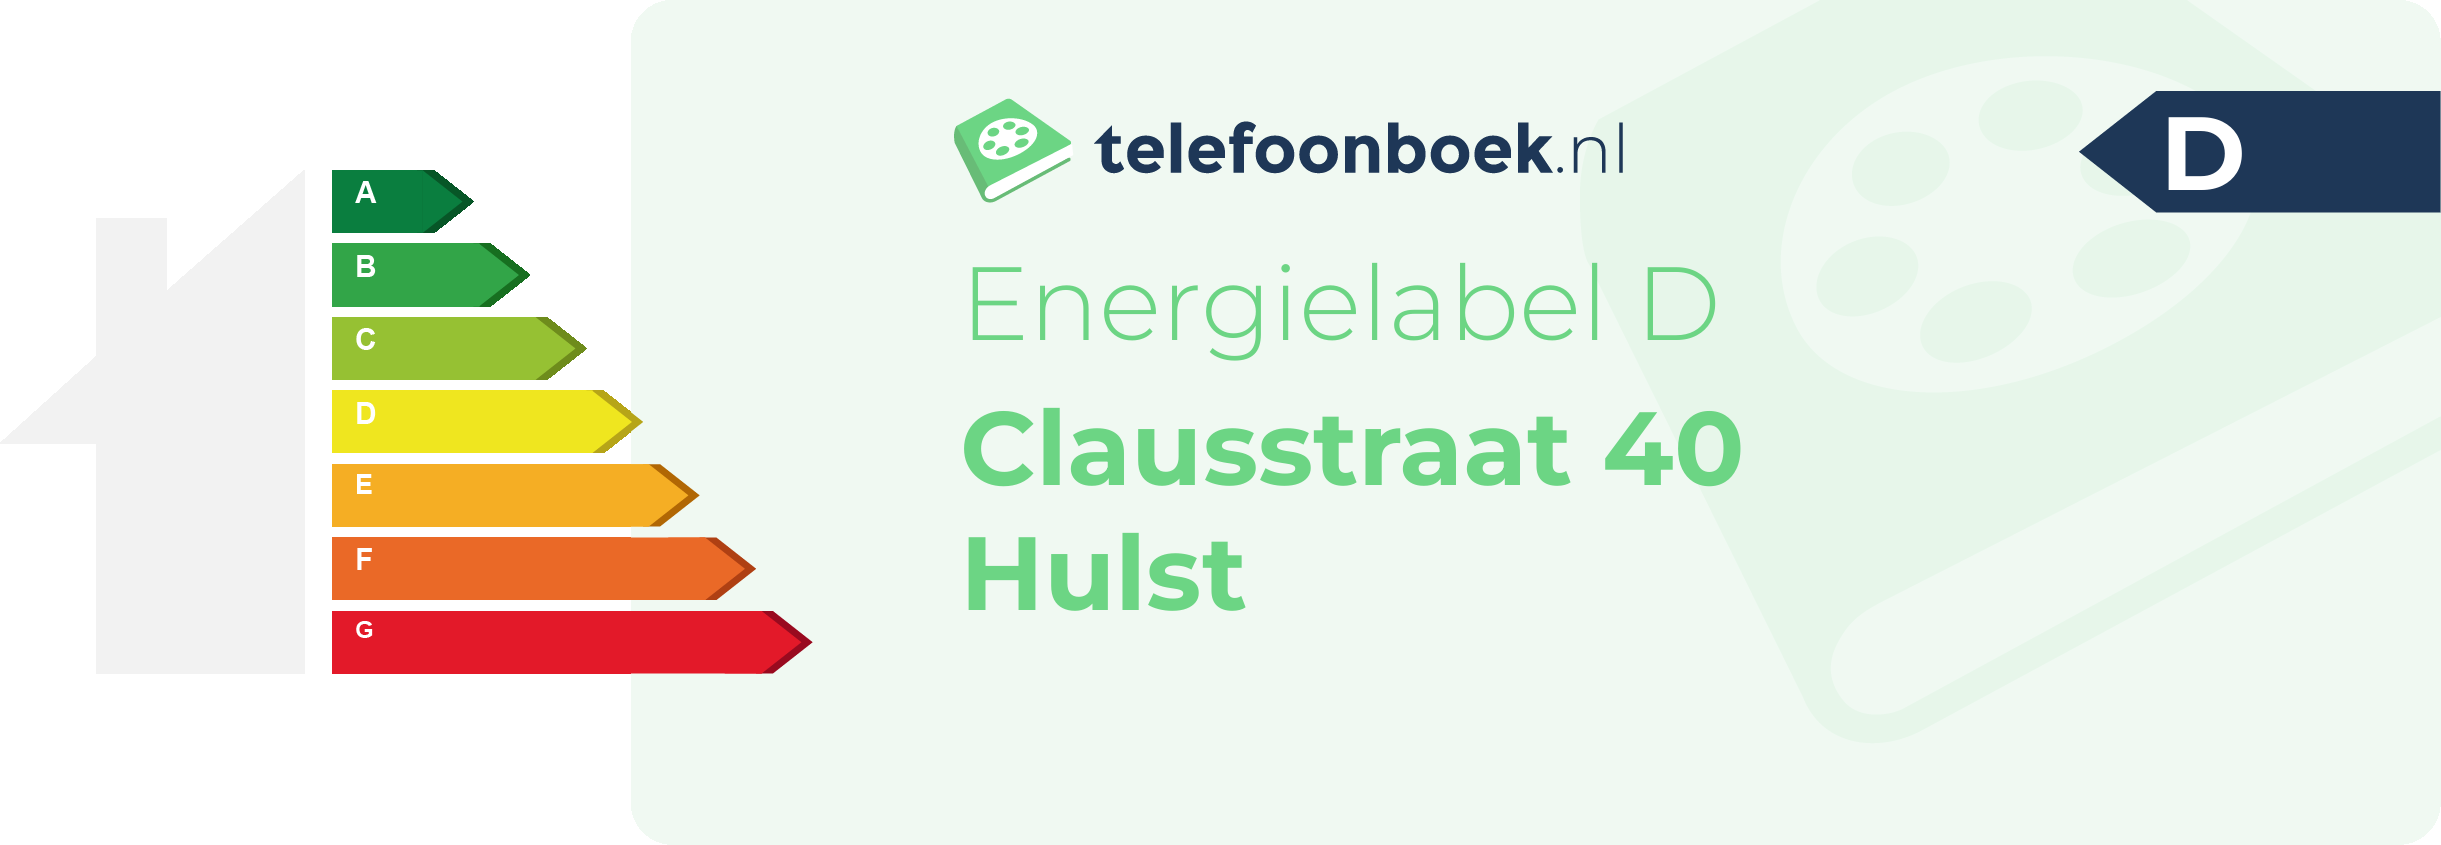 Energielabel Clausstraat 40 Hulst